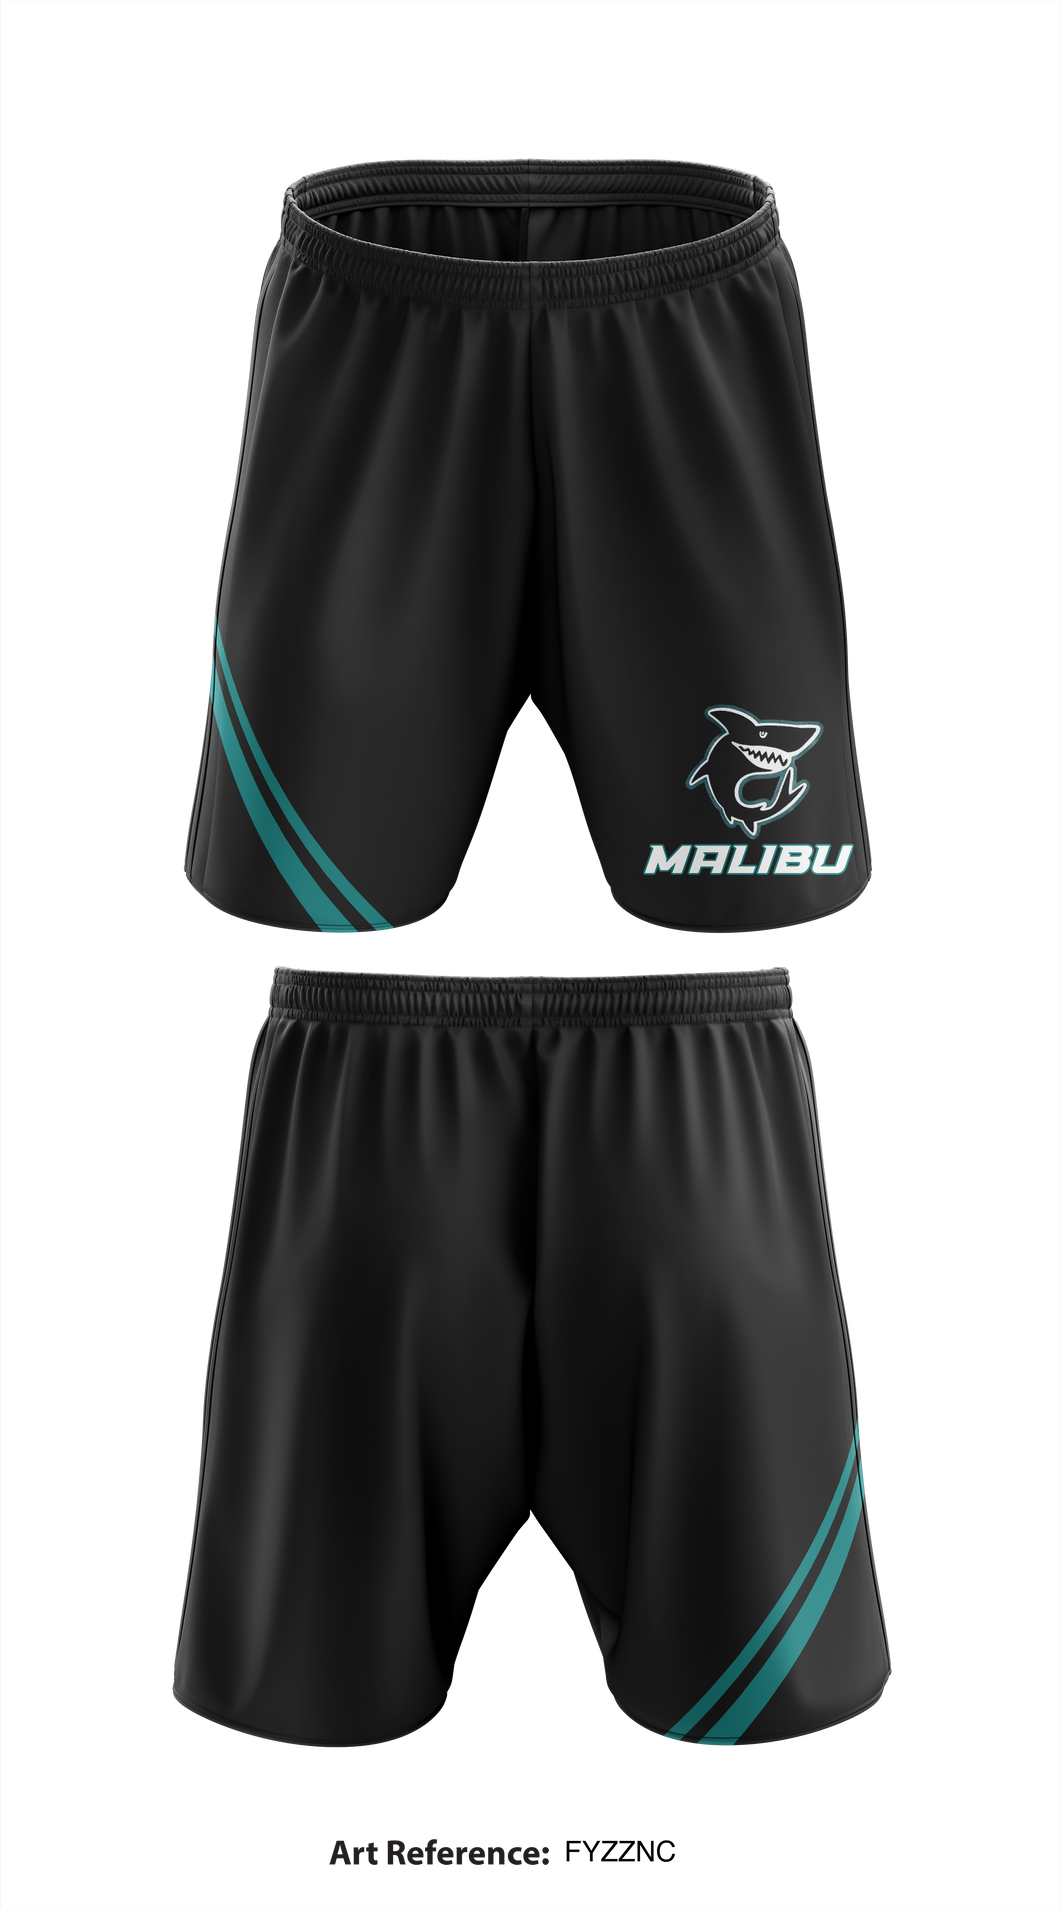 Malibu High School 94594289 Athletic Shorts With Pockets - 1